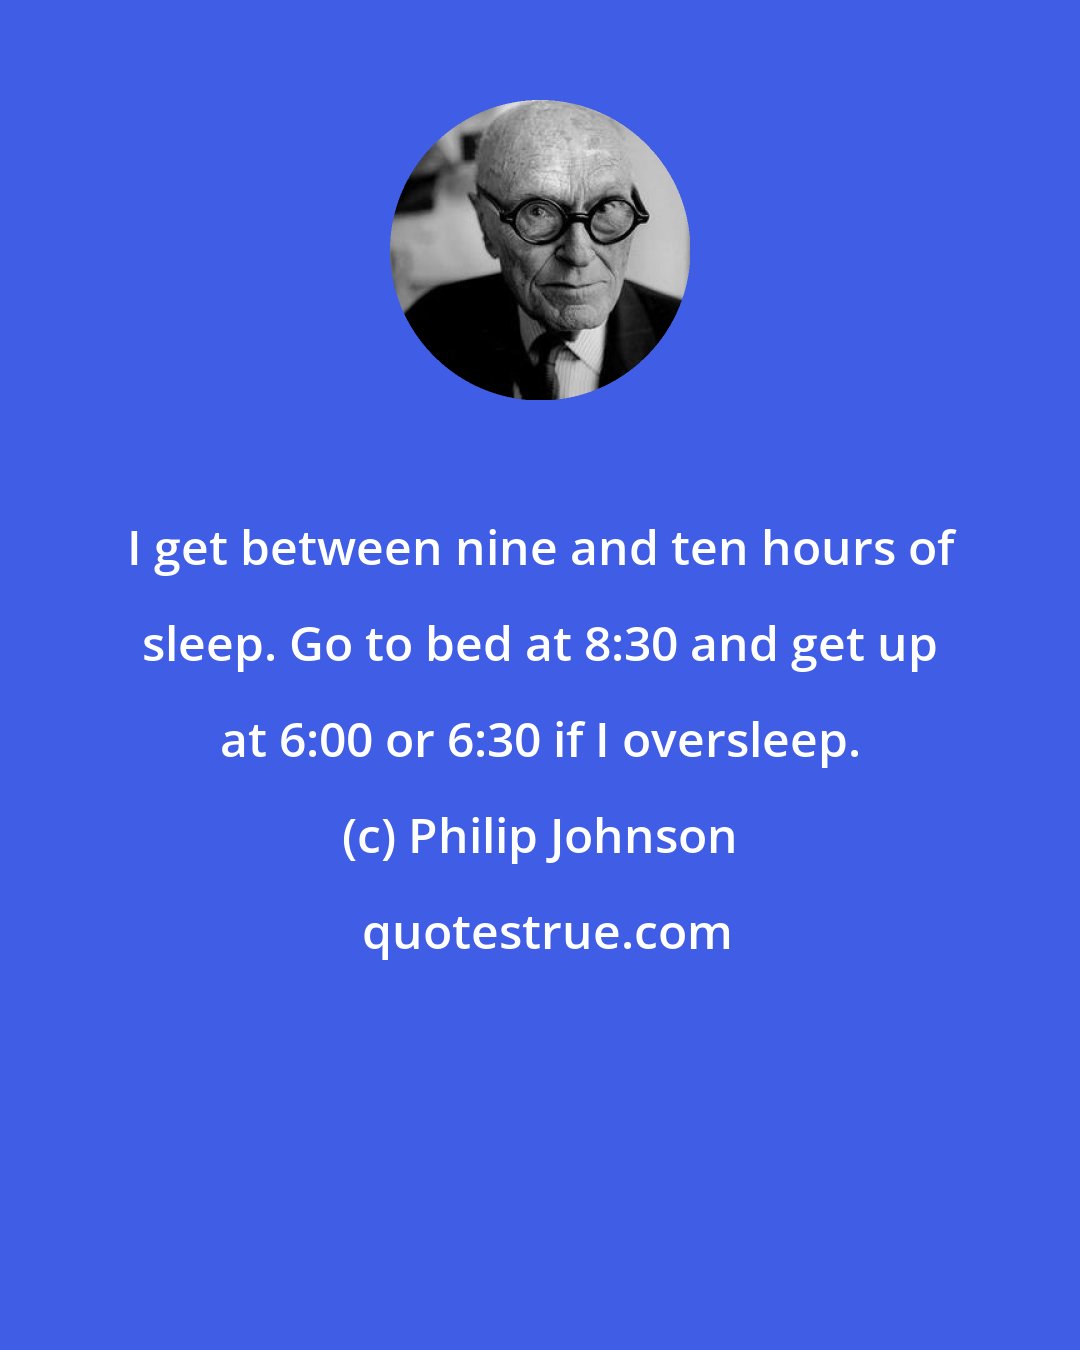 Philip Johnson: I get between nine and ten hours of sleep. Go to bed at 8:30 and get up at 6:00 or 6:30 if I oversleep.